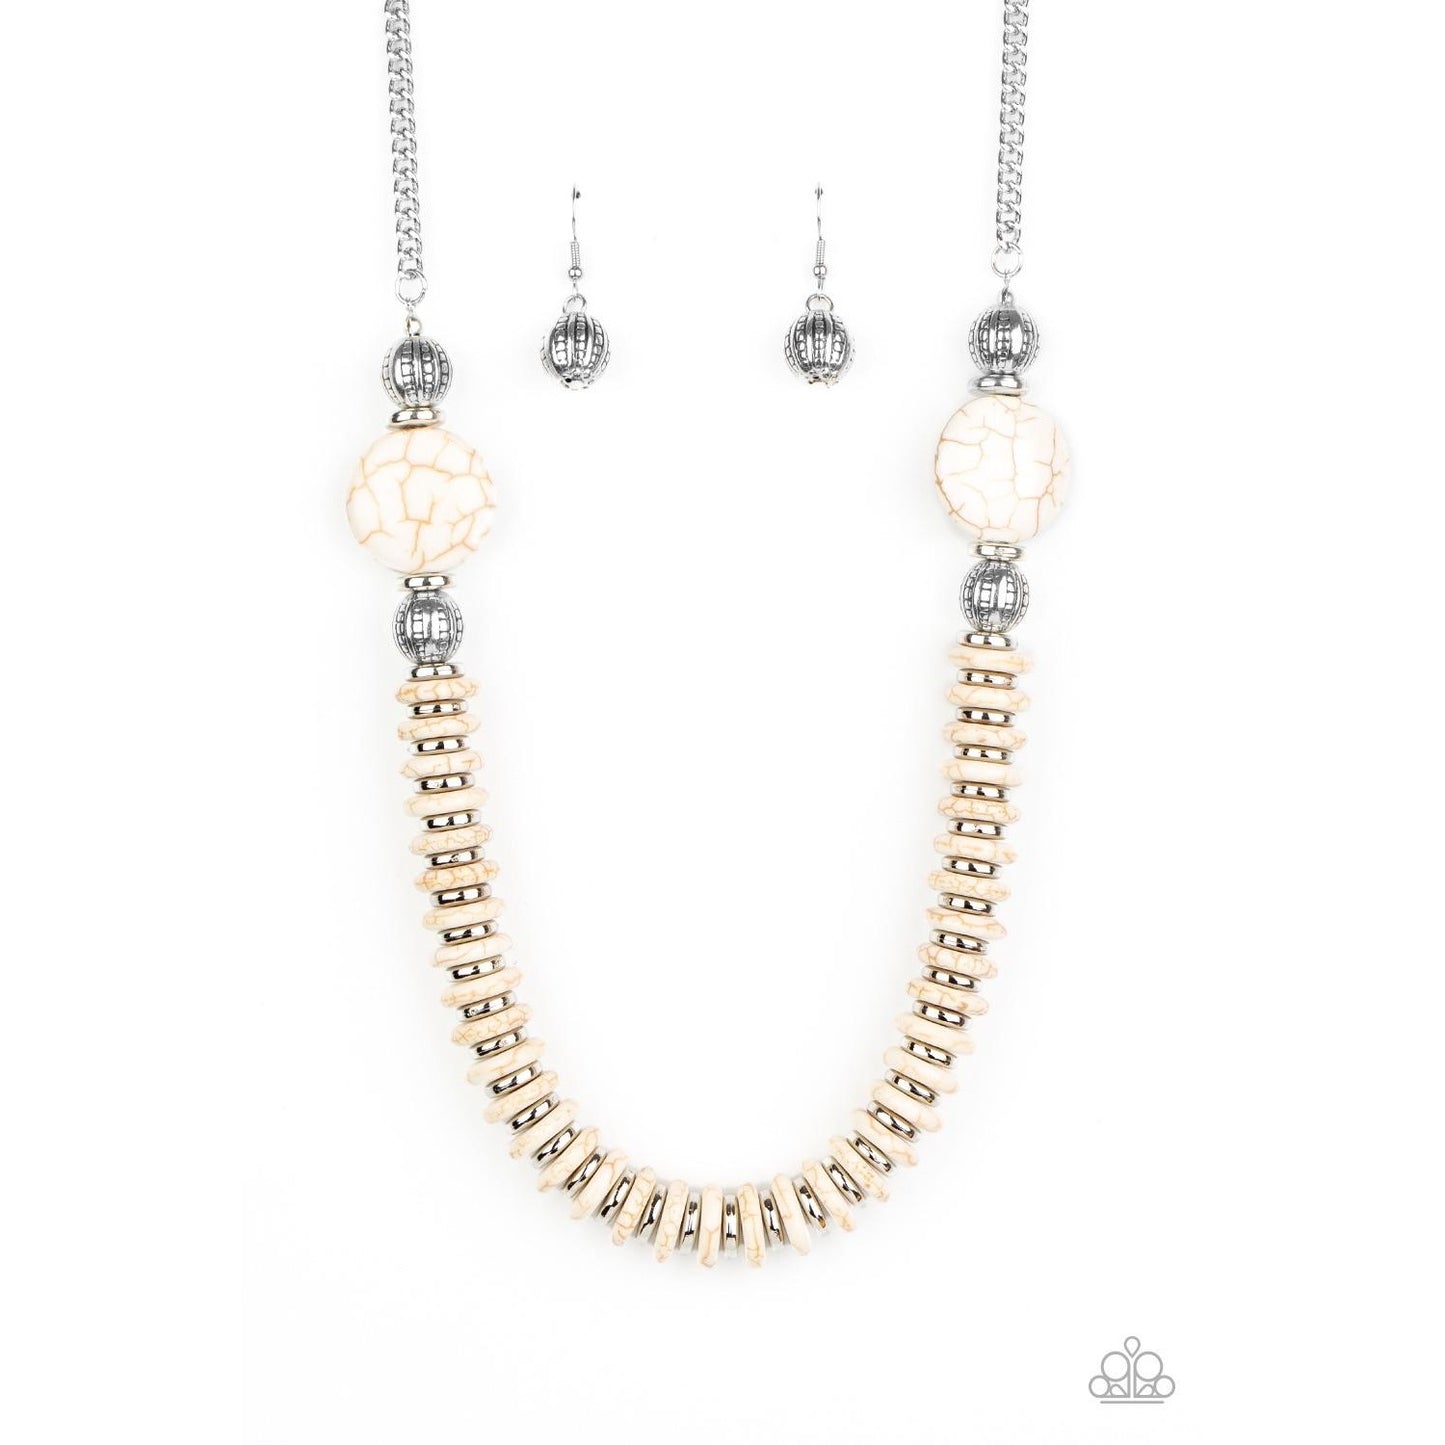 Desert Revival Necklace Earring & Eco Experience Bracelet White Set